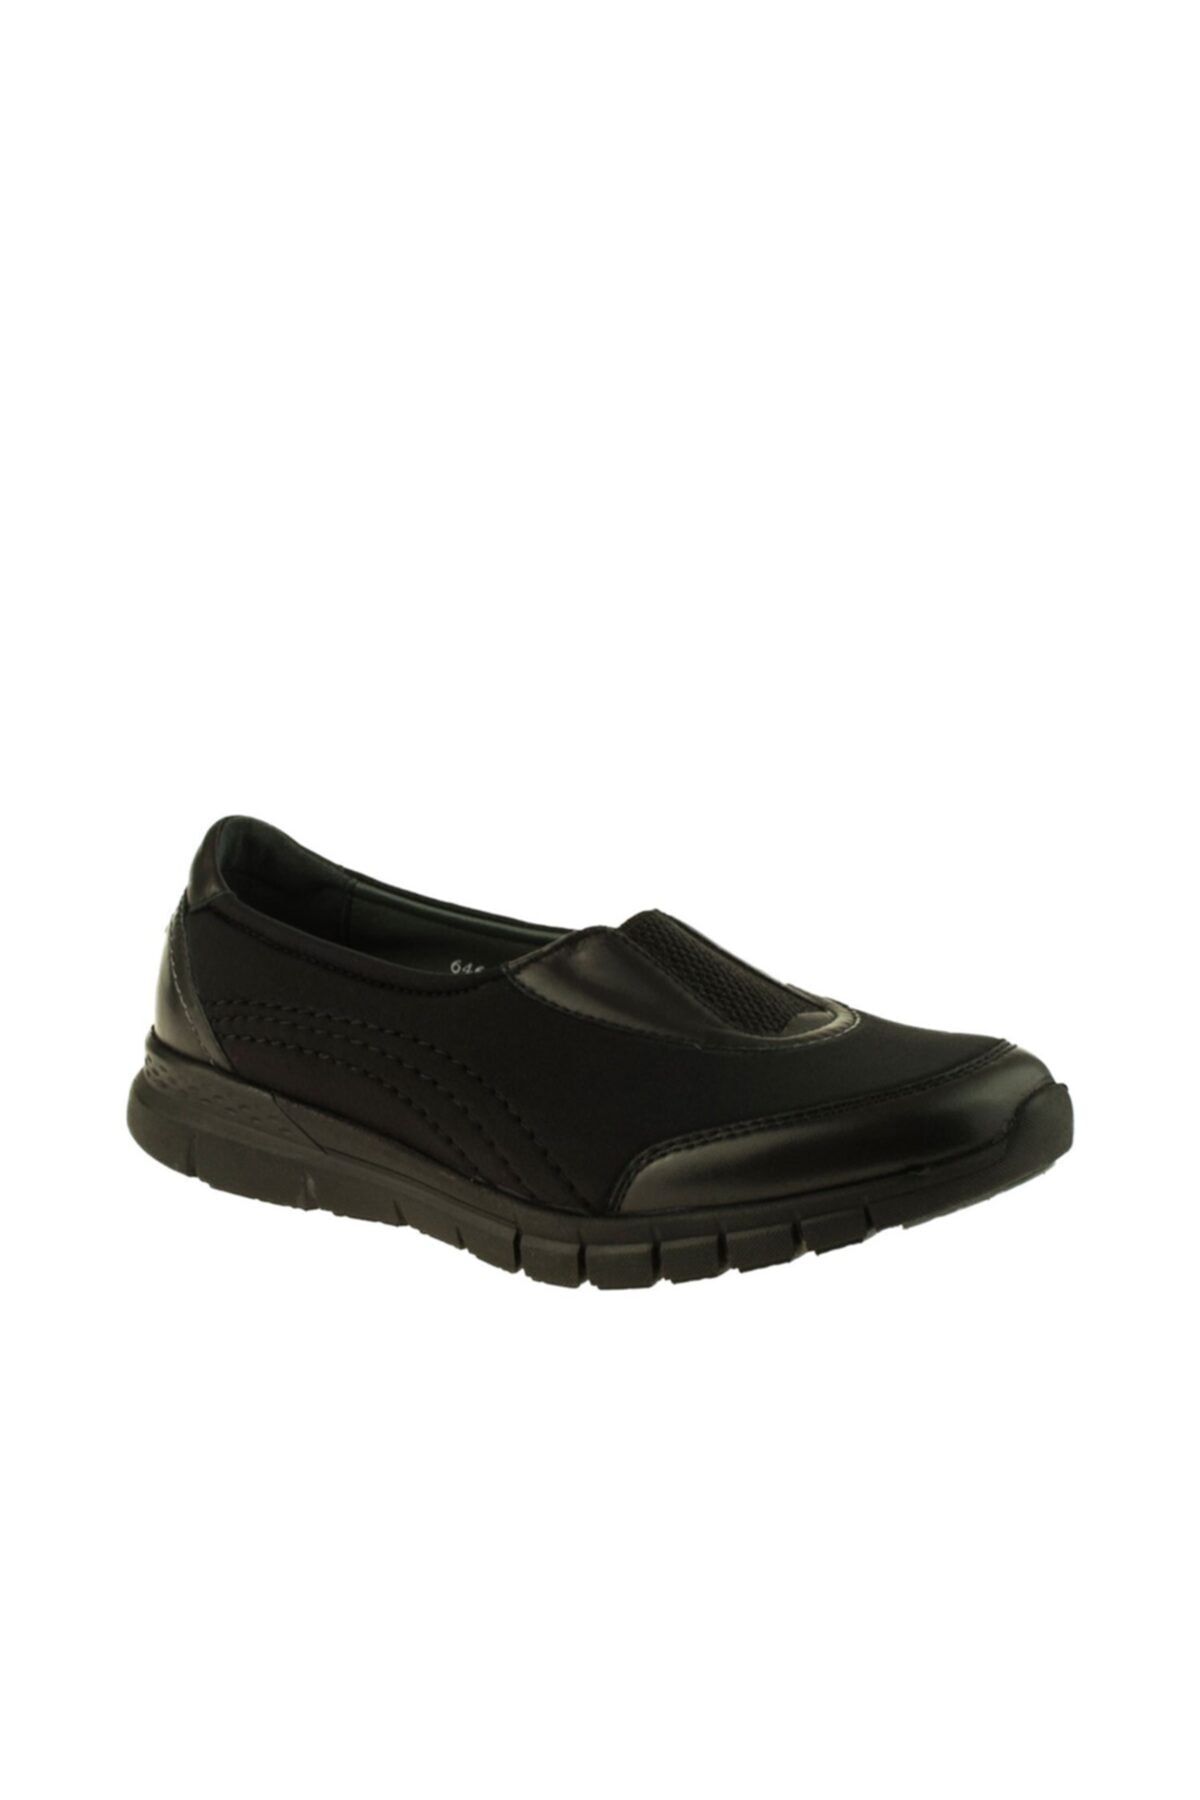 Forelli 29443-g Comfort Kadın Ayakkabı Siyah Fiyatı, Yorumları - Trendyol